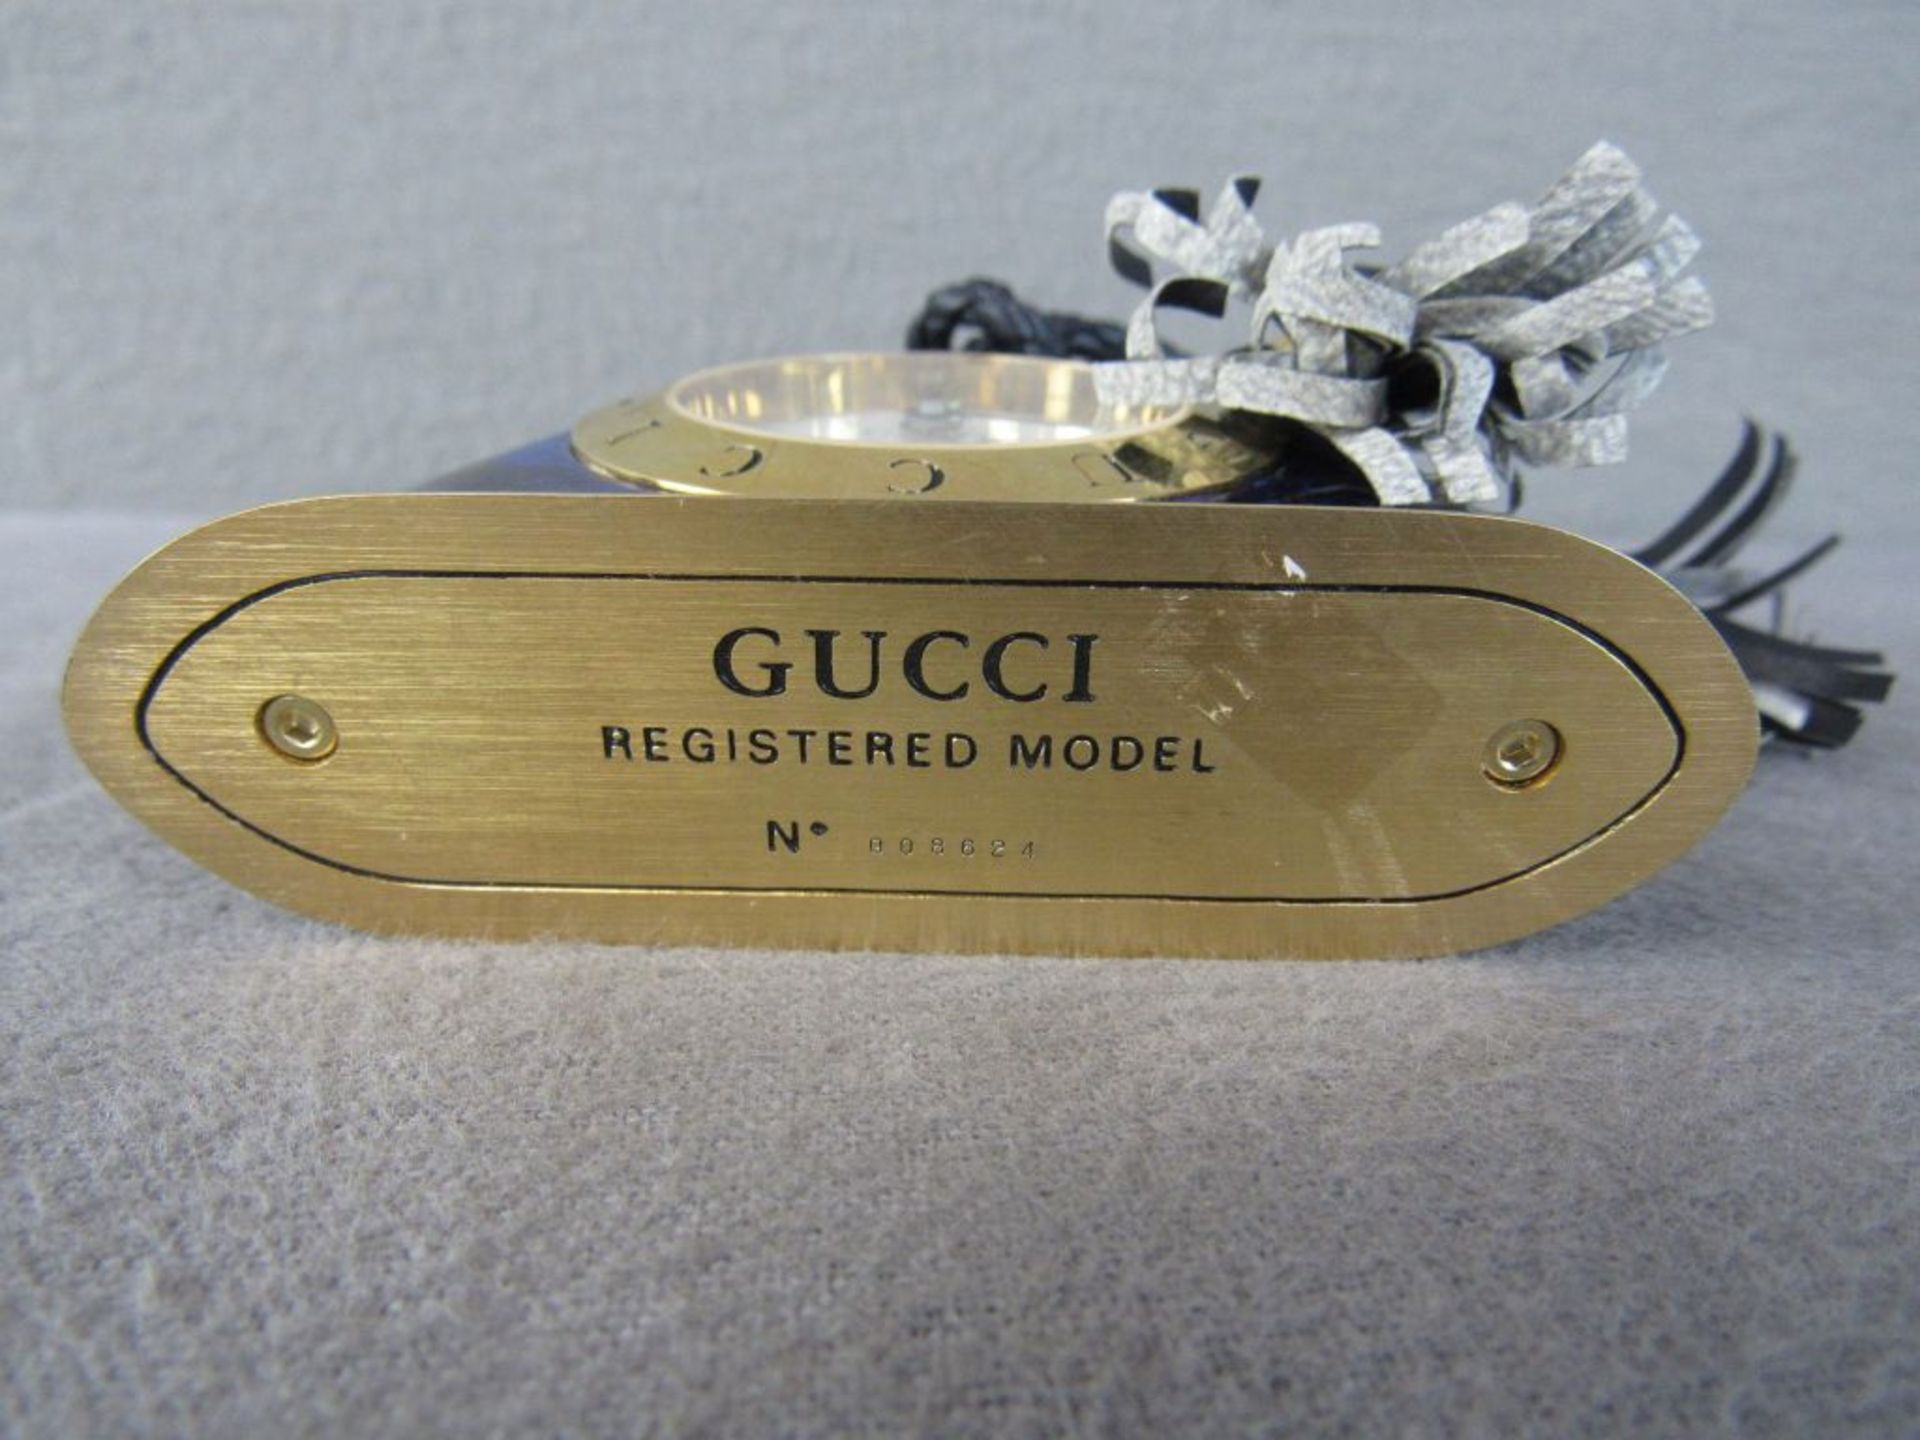 Kleine Reiseuhr Designeruhr Gucci original mit Modellnummer Höhe:8,5cm Breite:10cm - Image 4 of 6